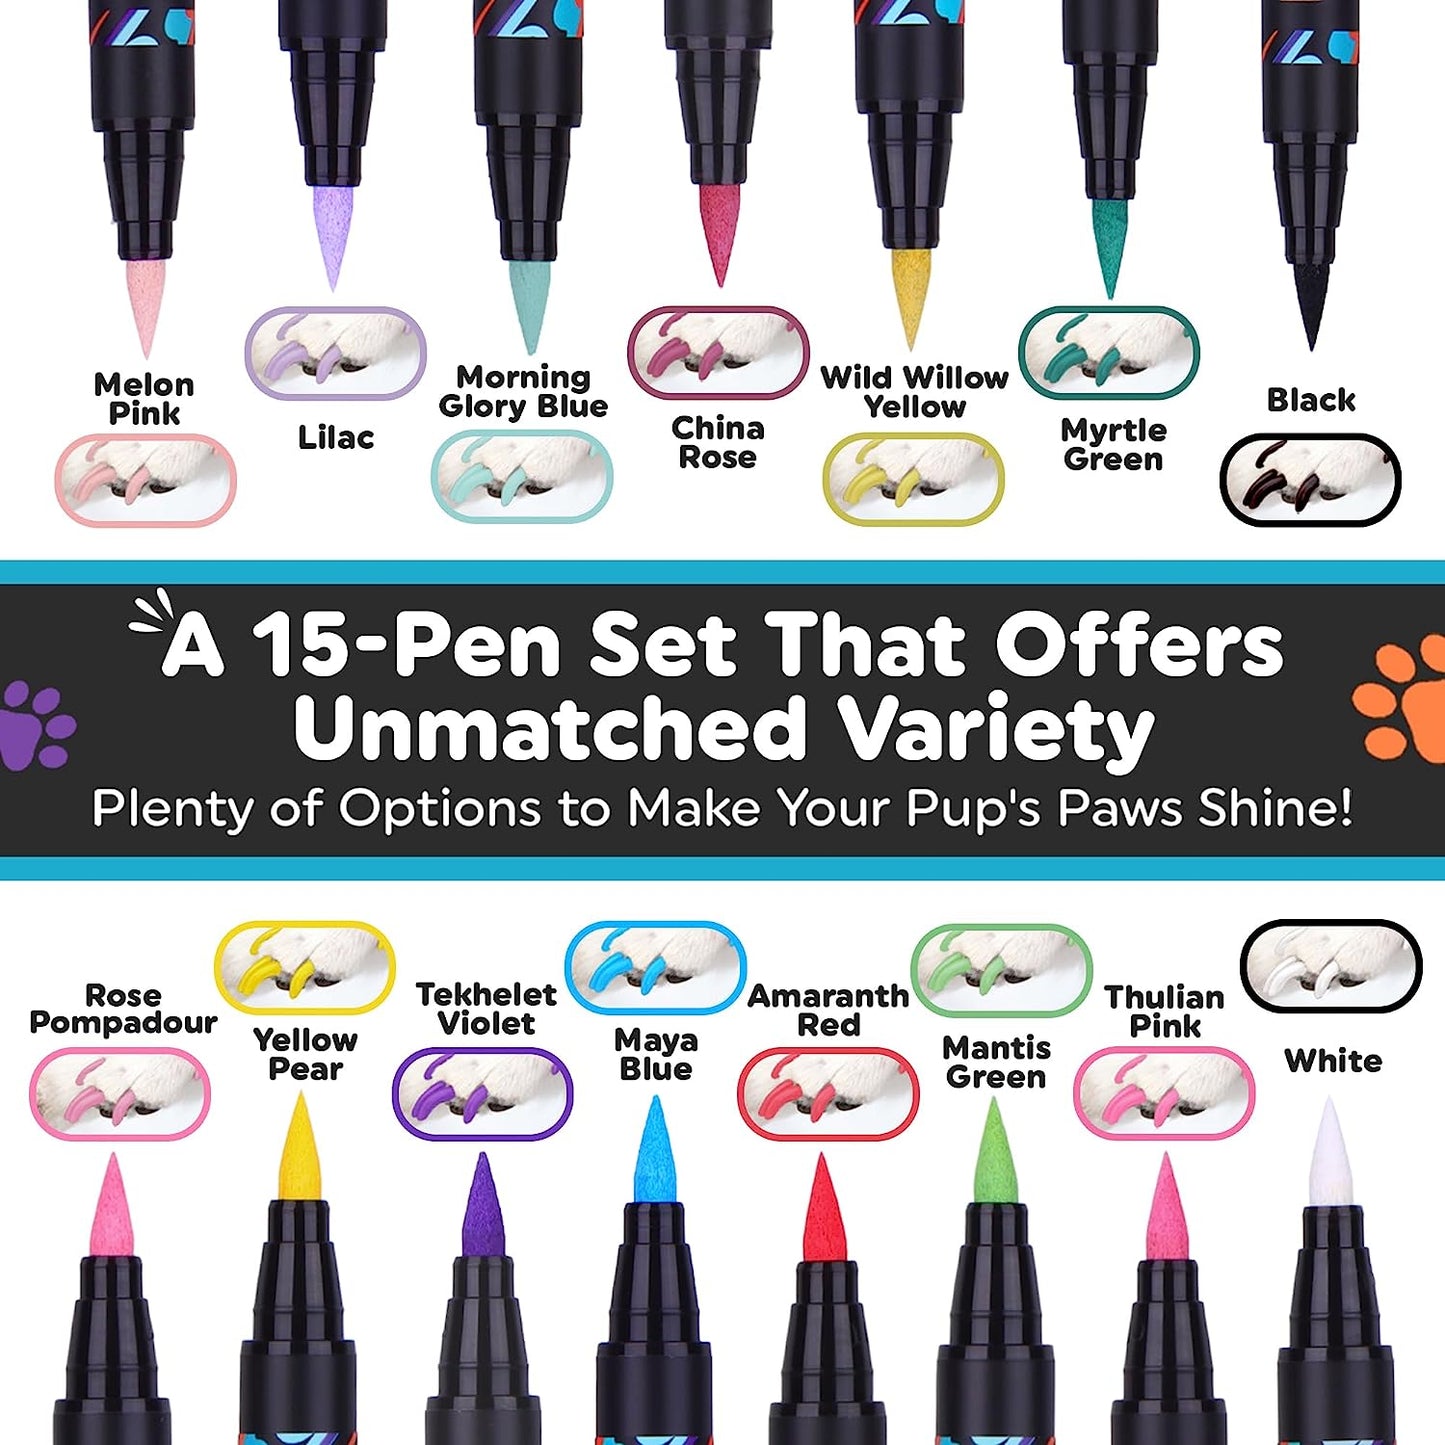 Dog Nail Polish Pens 8 or 15 Color Set